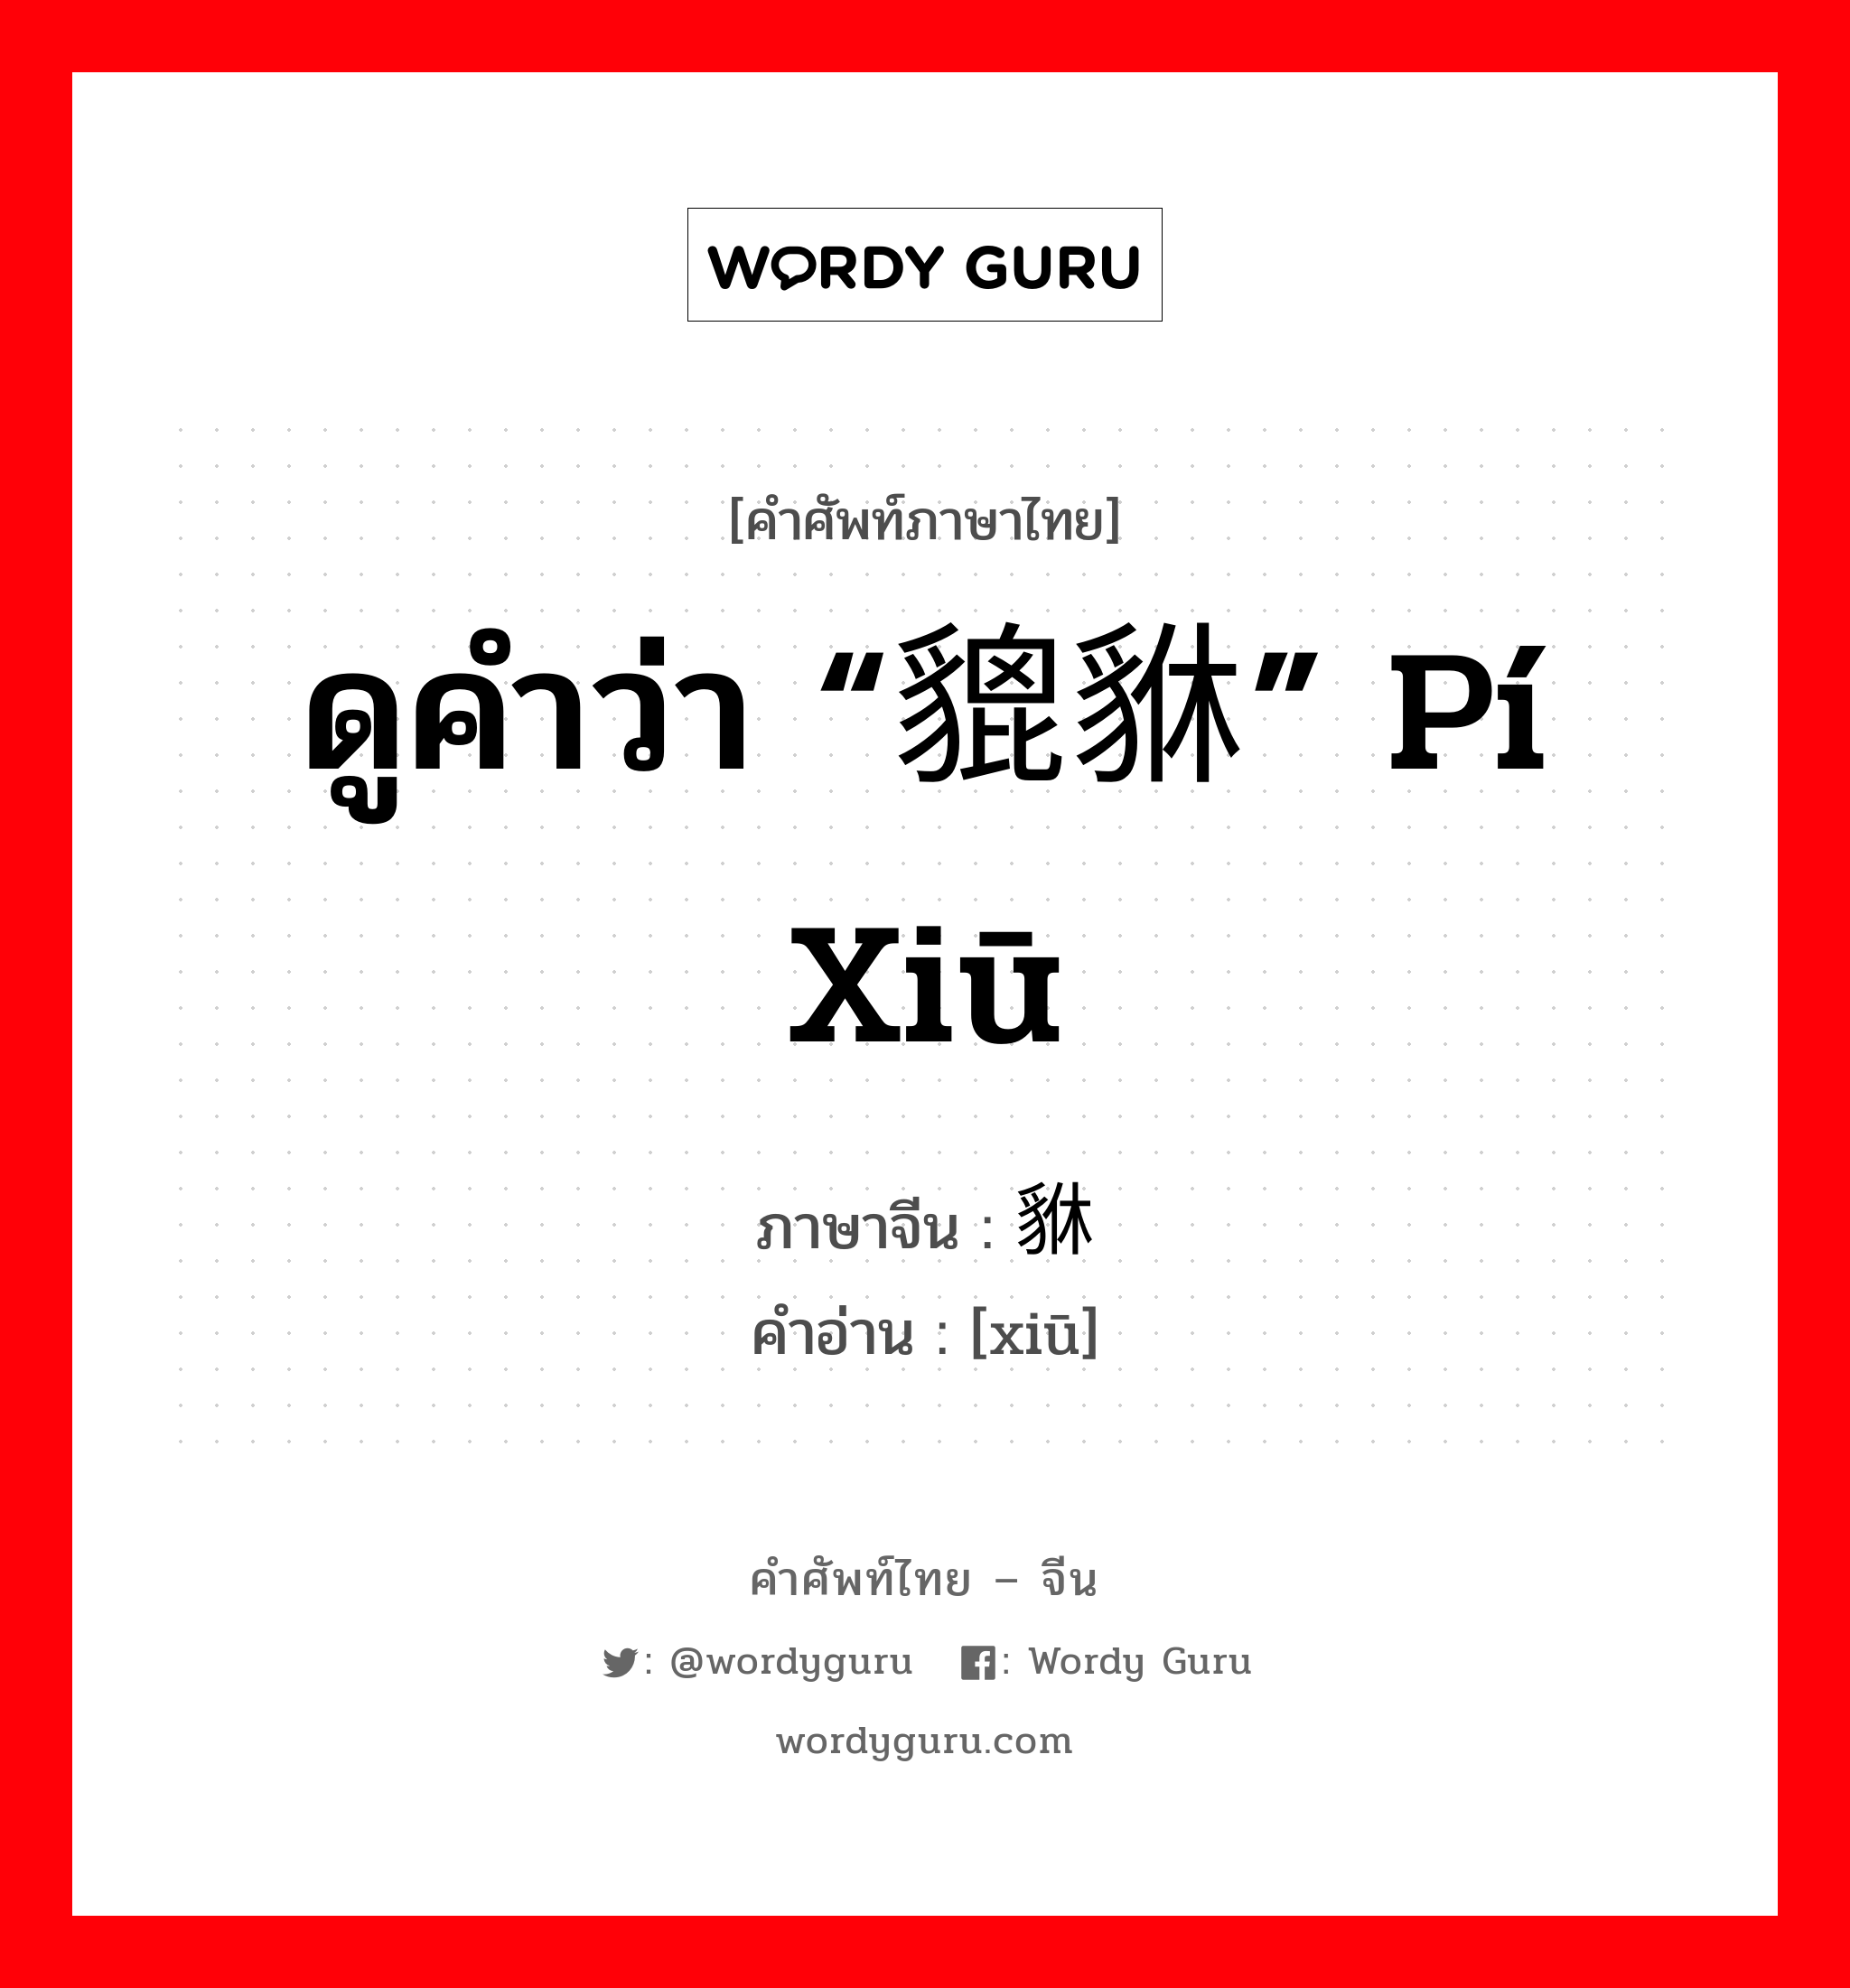 ดูคำว่า “貔貅” pí xiū ภาษาจีนคืออะไร, คำศัพท์ภาษาไทย - จีน ดูคำว่า “貔貅” pí xiū ภาษาจีน 貅 คำอ่าน [xiū]